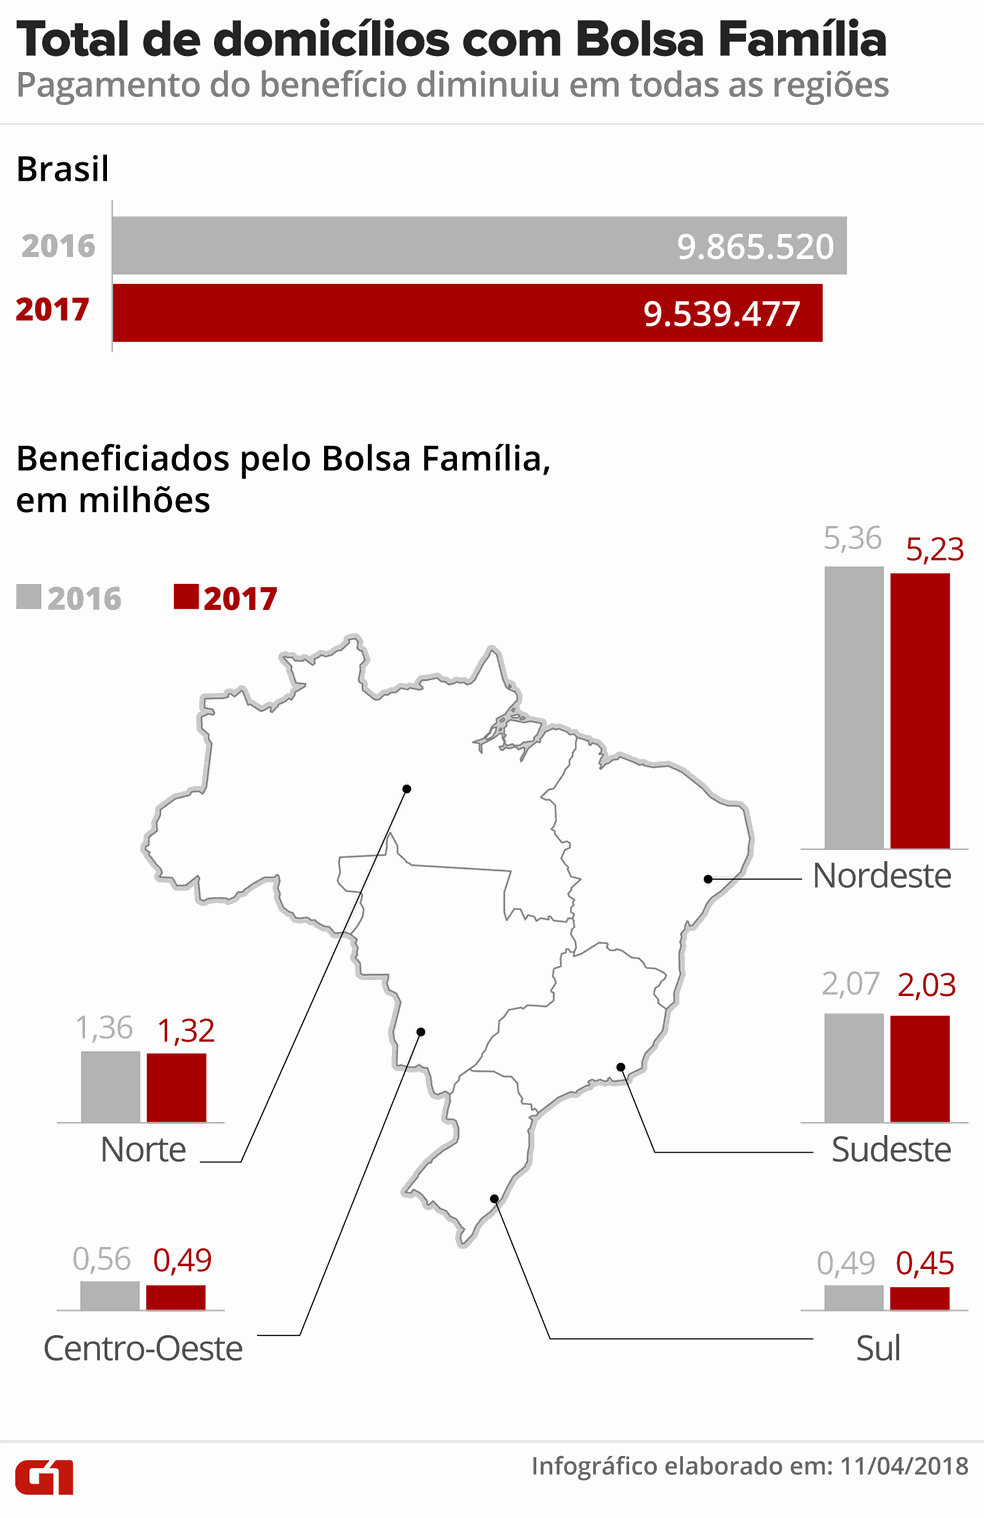 Total de municípios com bolsa família (Foto: Ilustração: Roberta Jaworski/G1)